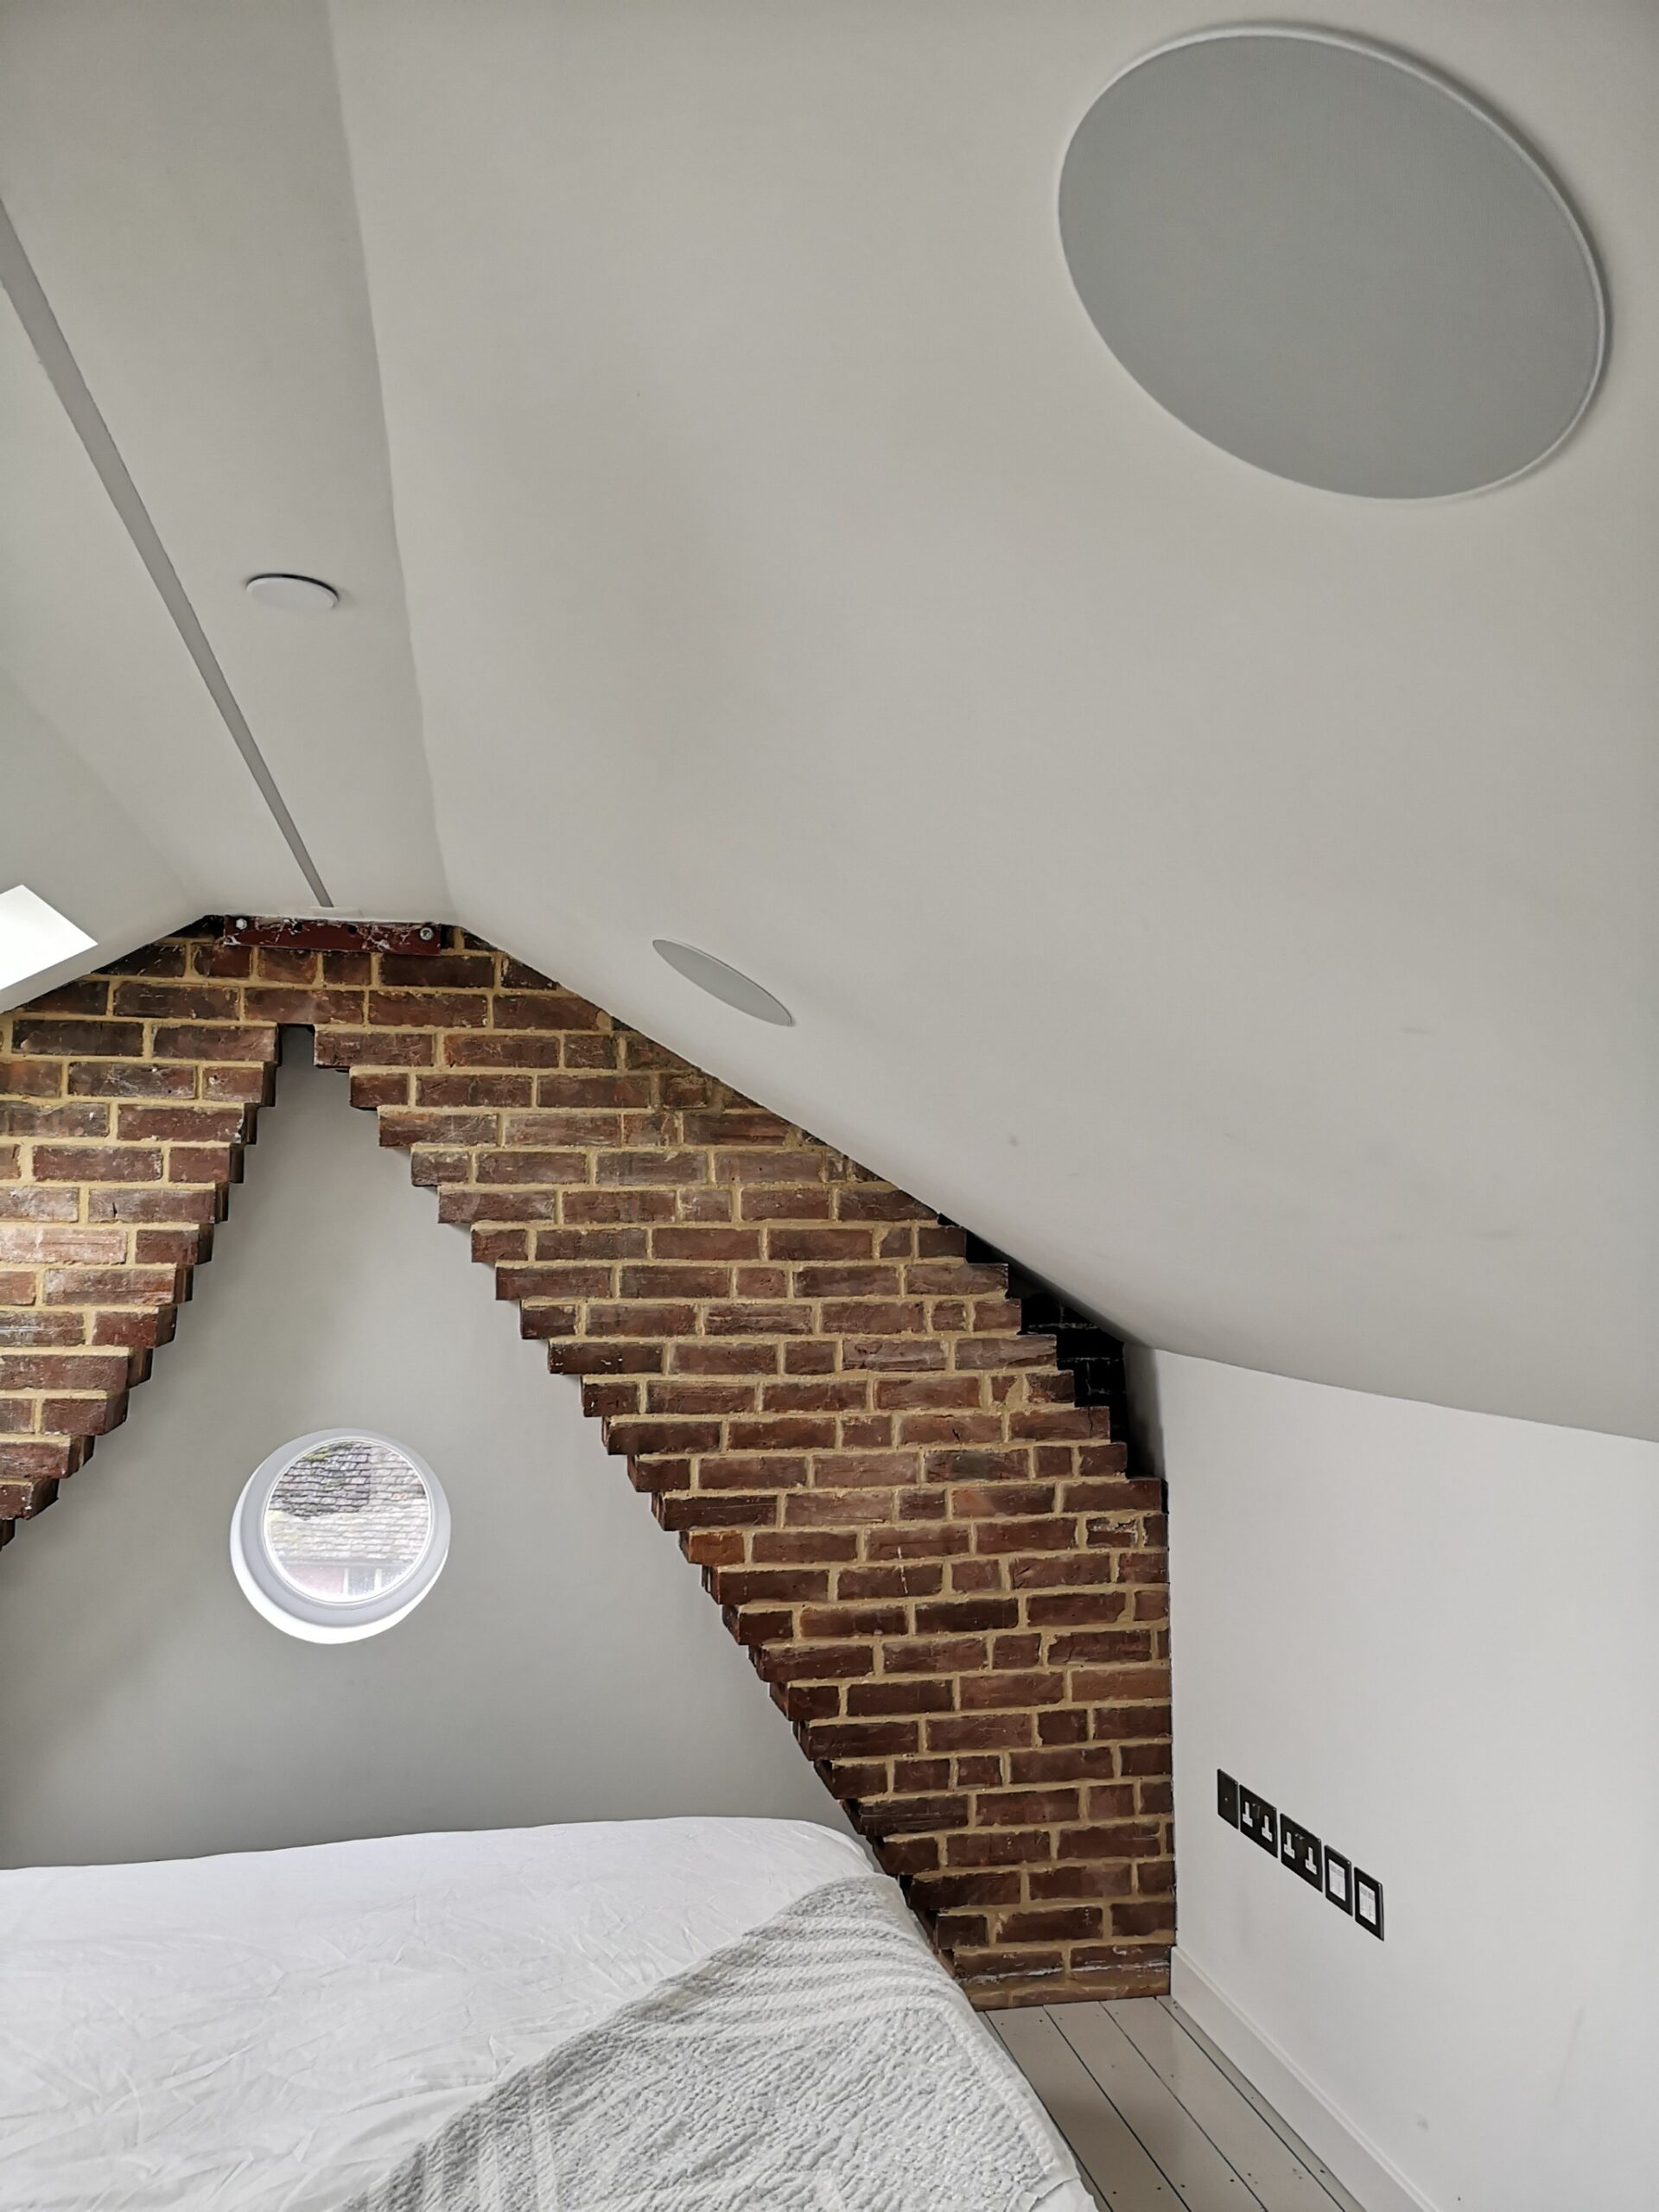 Close up of a Klipsch in-ceiling speaker